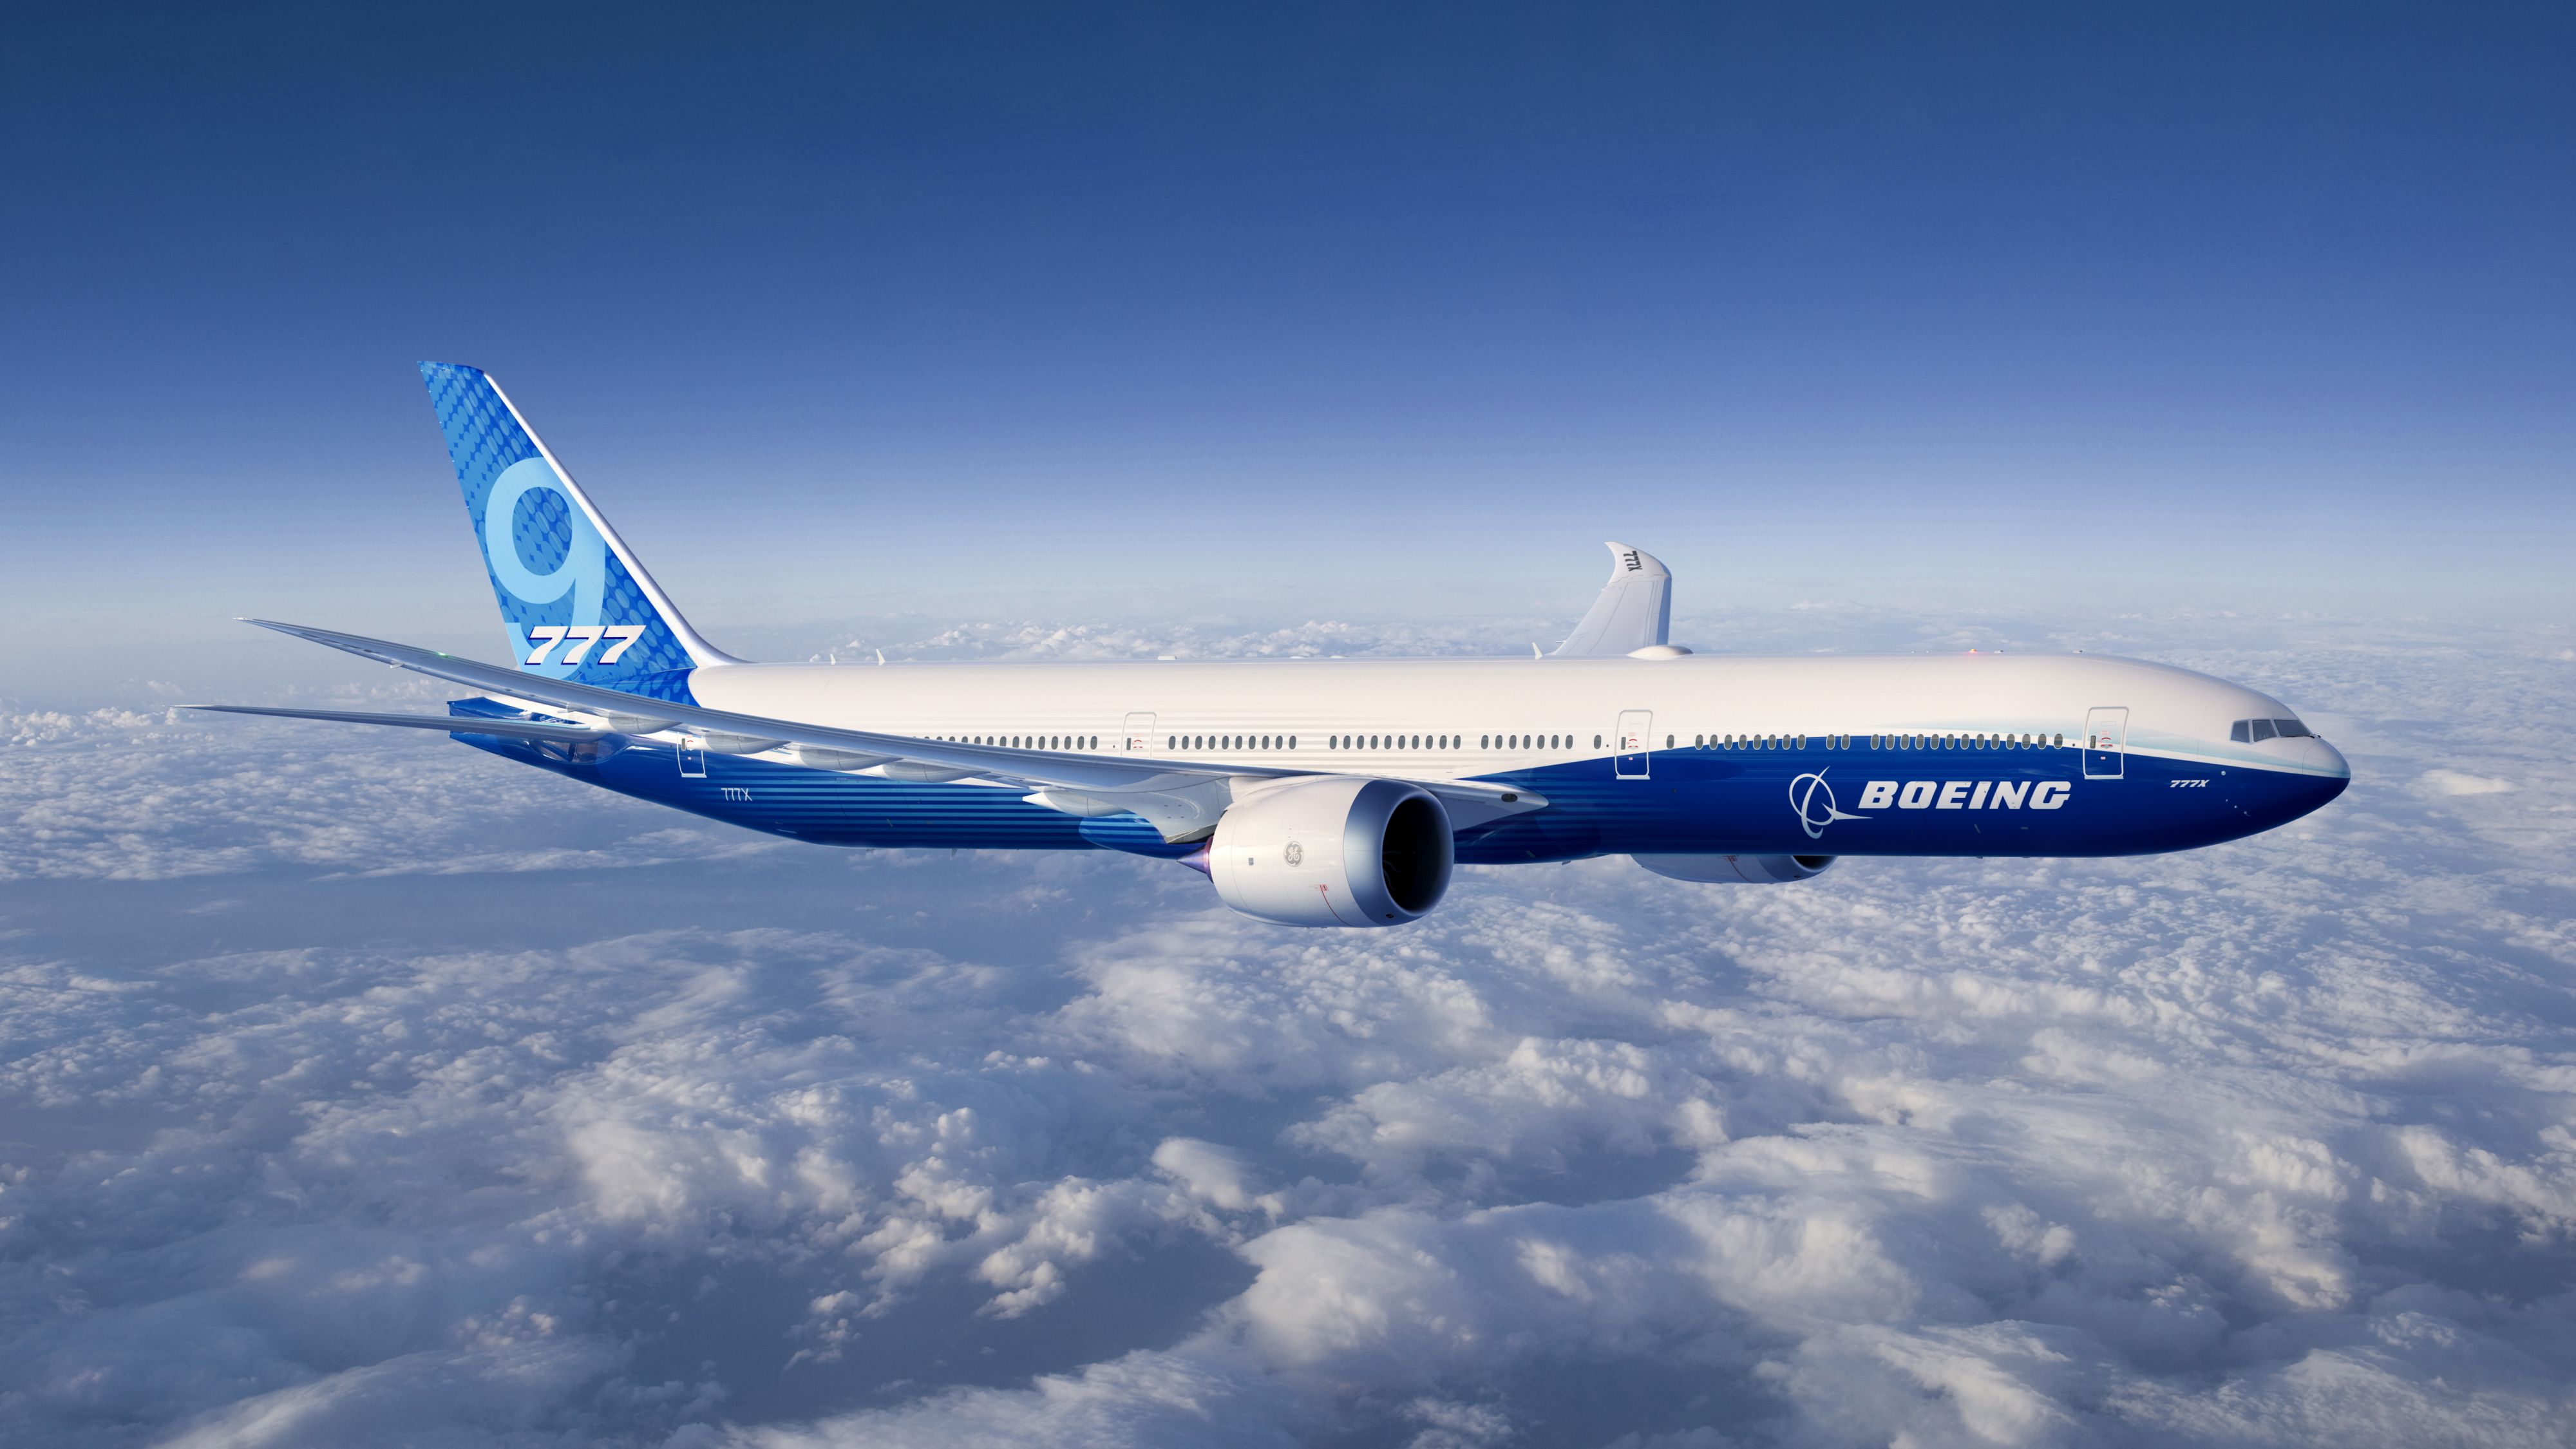 Problemen met nieuw 777X vliegtuig van Boeing